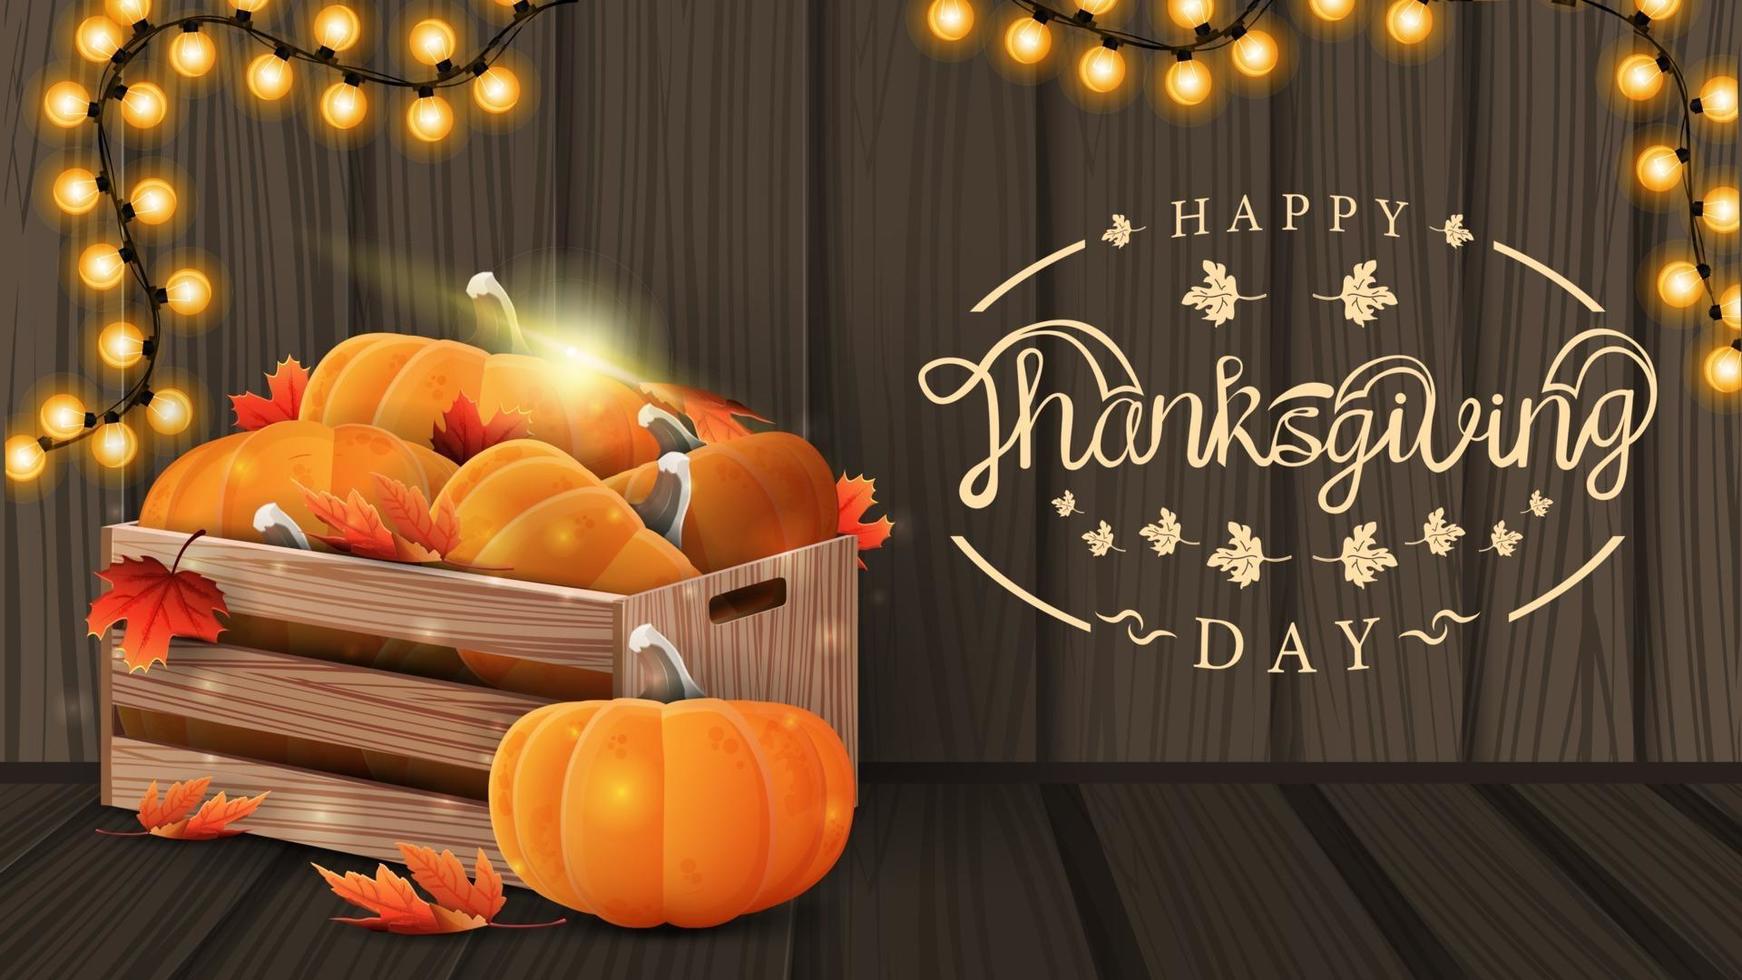 Happy Thanksgiving, kreative Grußpostkarte mit schönem Logo, Holzhintergrund und Holzkisten mit reifen Kürbissen und Herbstblättern and vektor